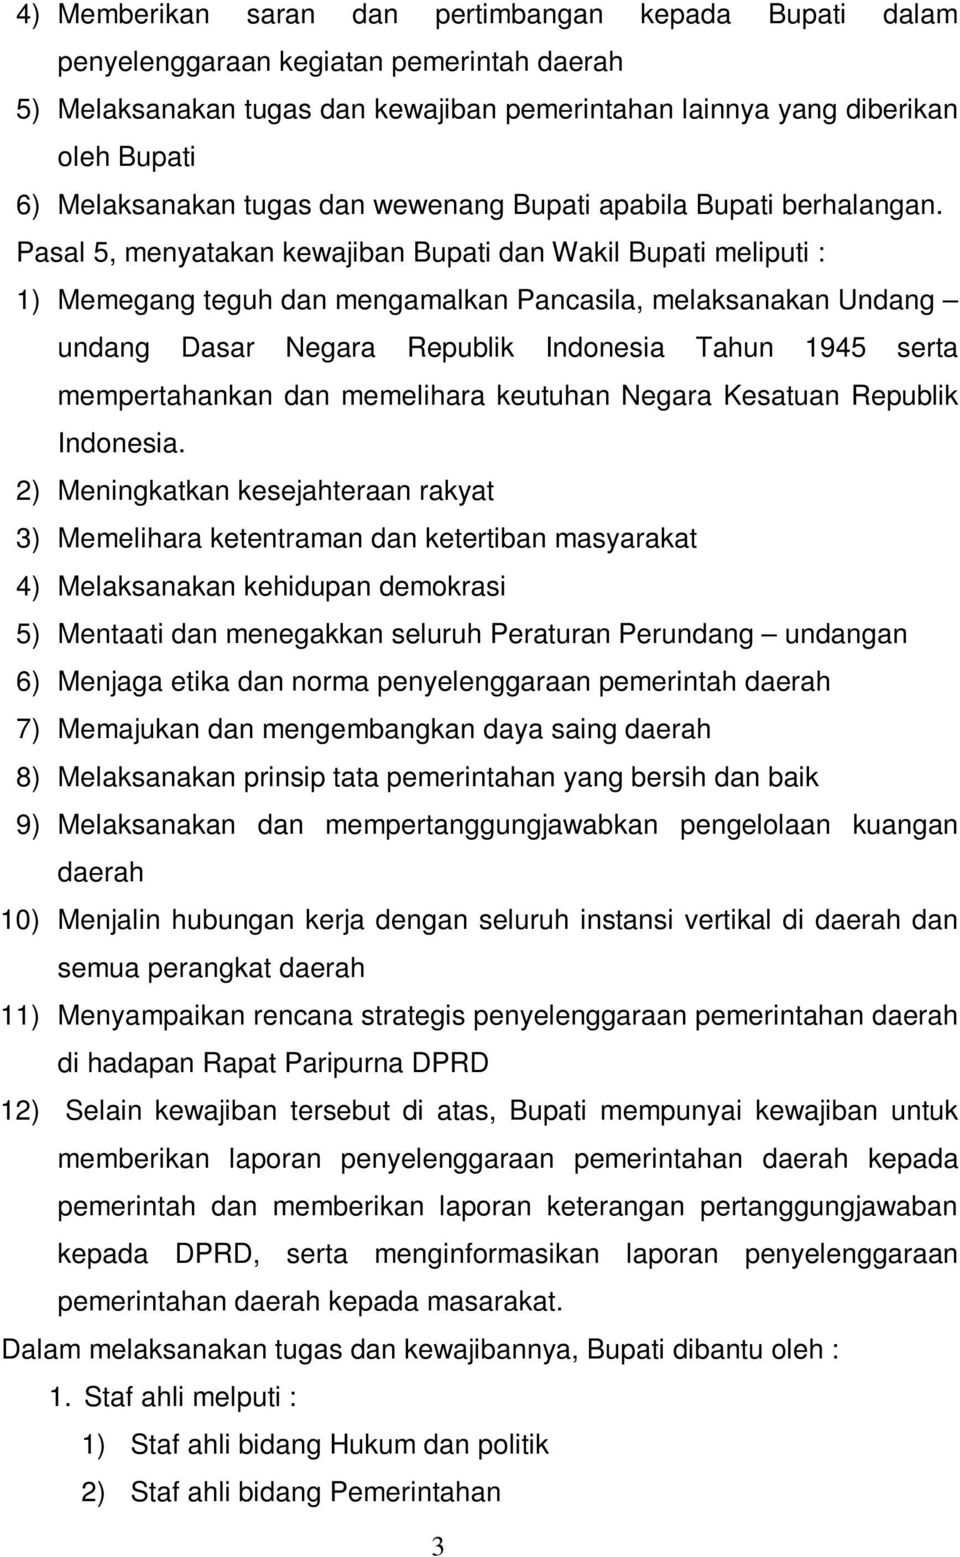 Pasal 5, menyatakan kewajiban Bupati dan Wakil Bupati meliputi : 1) Memegang teguh dan mengamalkan Pancasila, melaksanakan Undang undang Dasar Negara Republik Indonesia Tahun 1945 serta